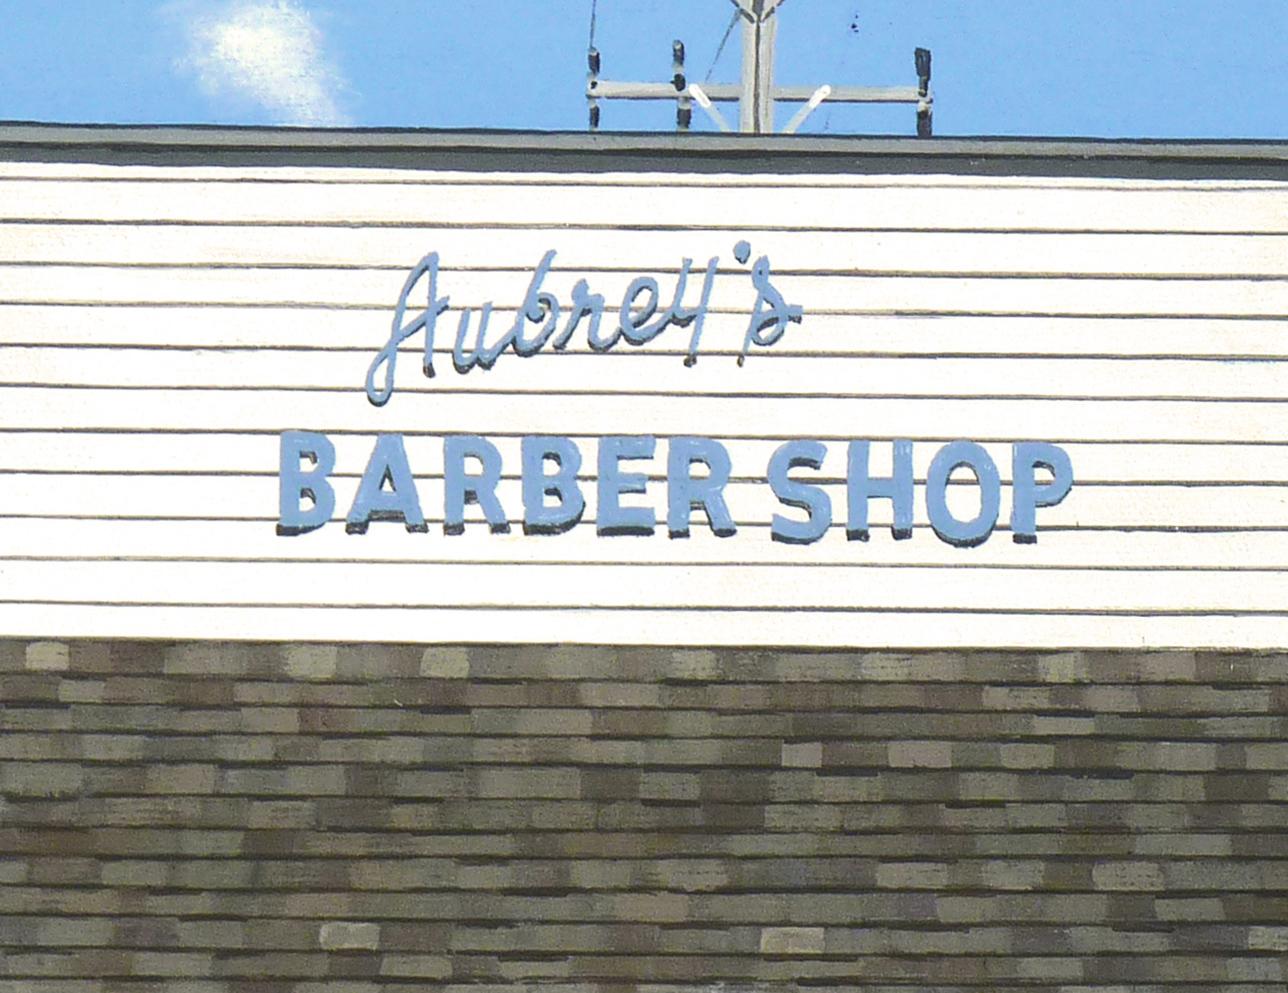 Aubrey's Barber Shop (Fotorealismus), Art, von Michael Ward